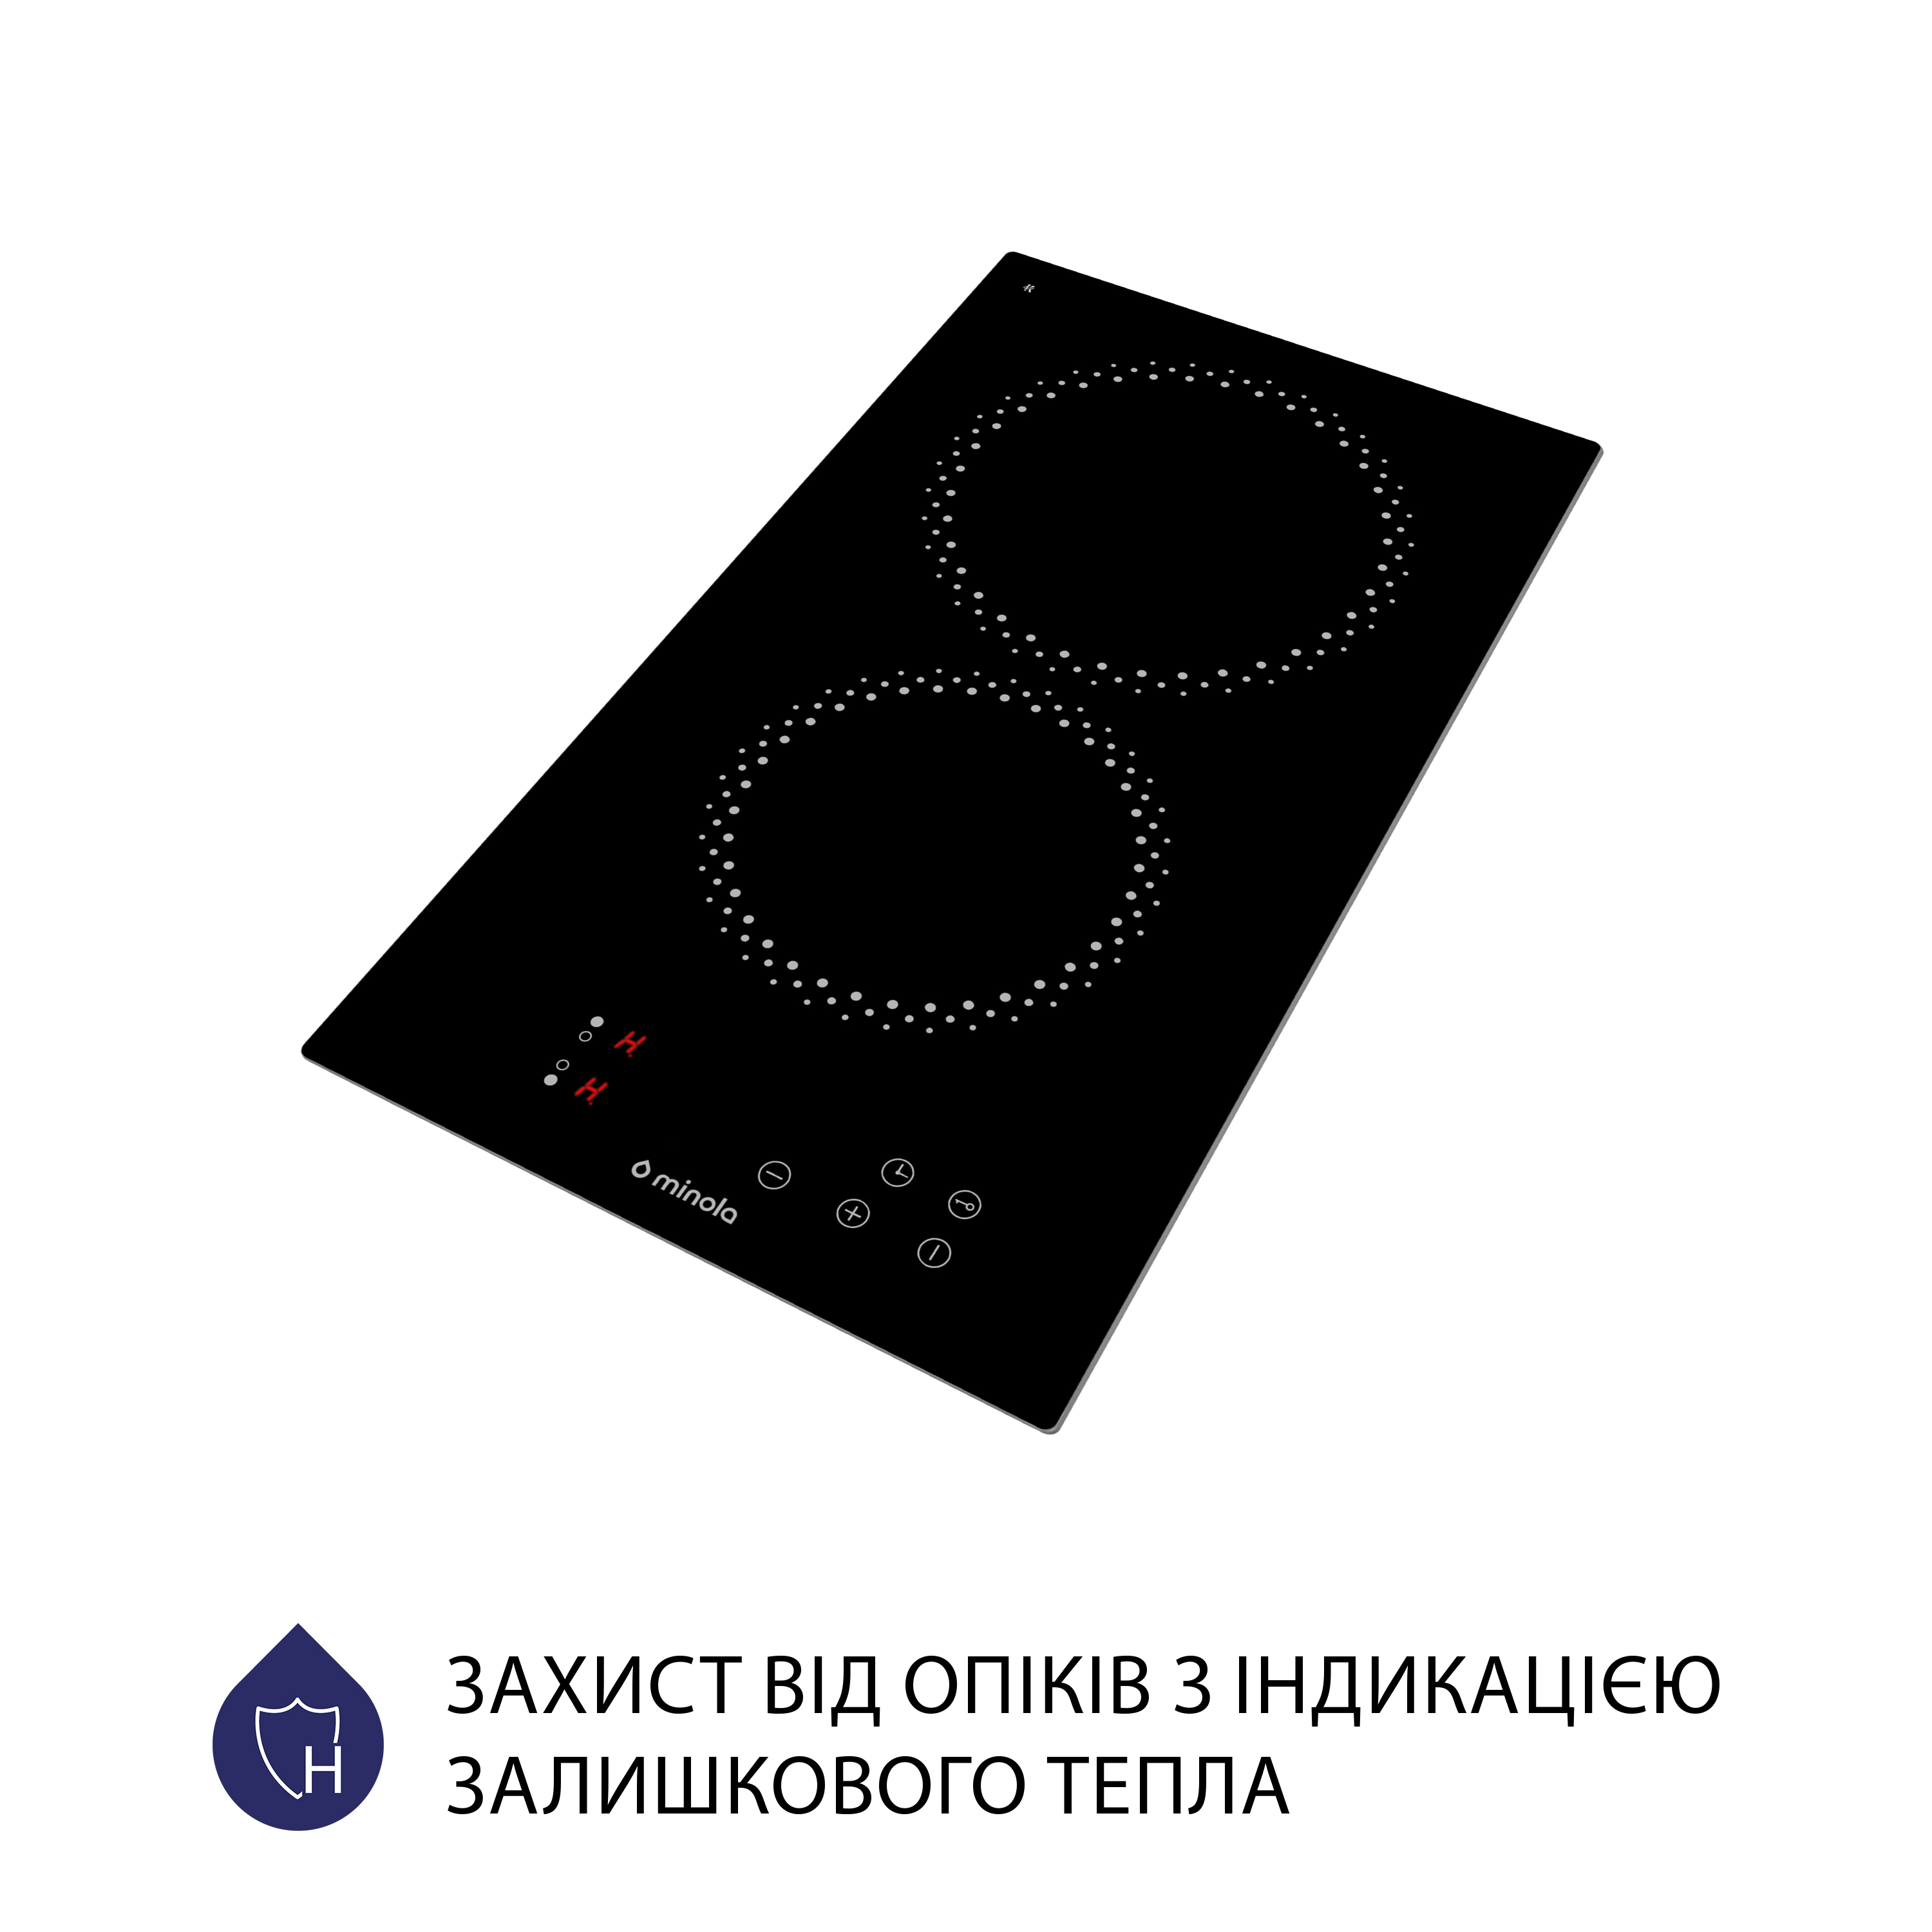 Электрическая варочная поверхность  Minola Domino MVH 3030 KBL отзывы - изображения 5